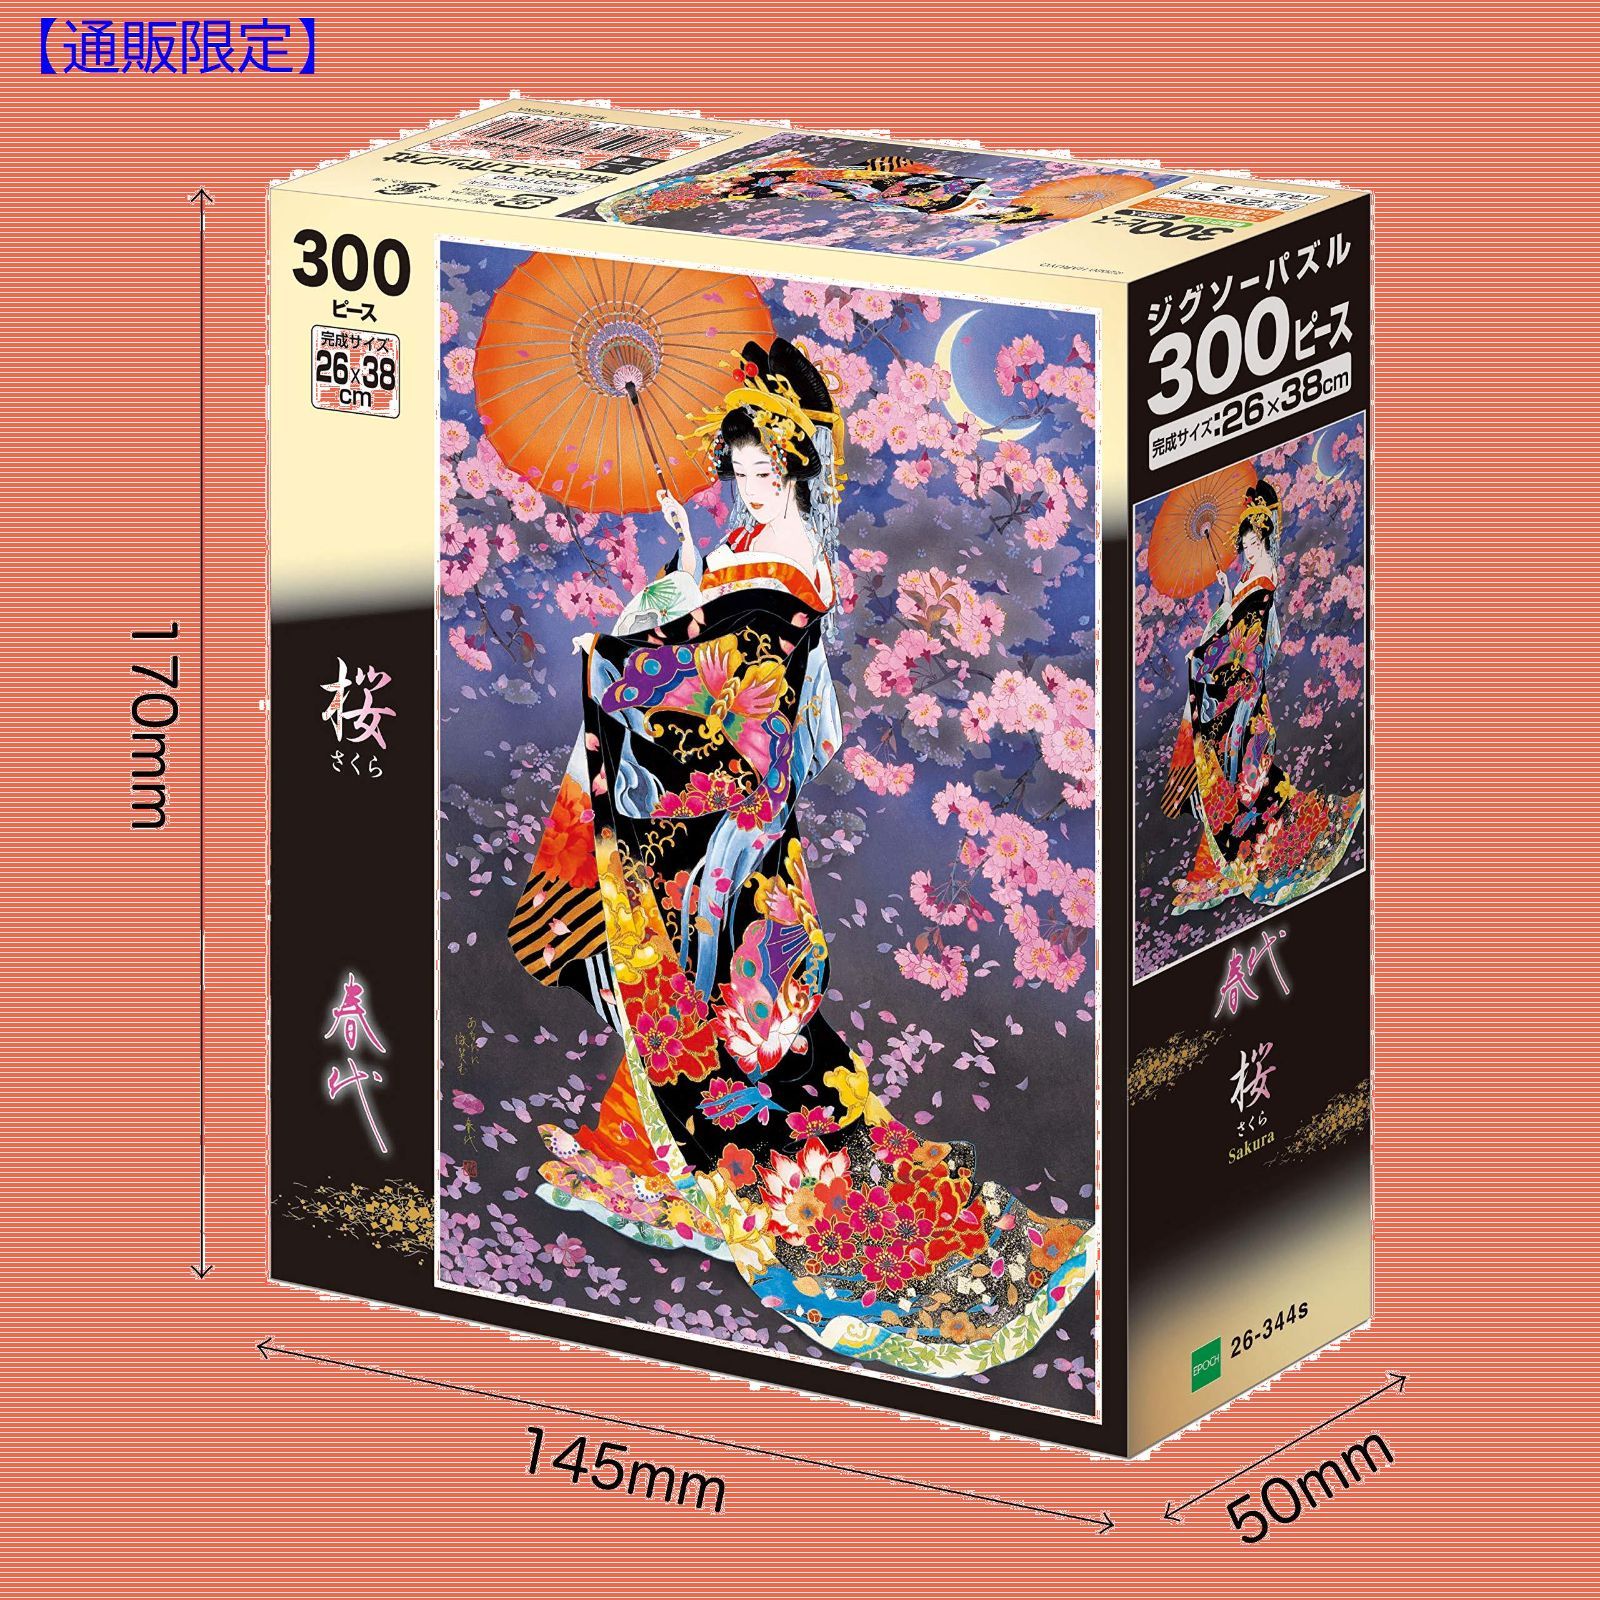 スタイル:桜】春代 桜 ジグソーパズル 300ピース 26x38cm エポック ...